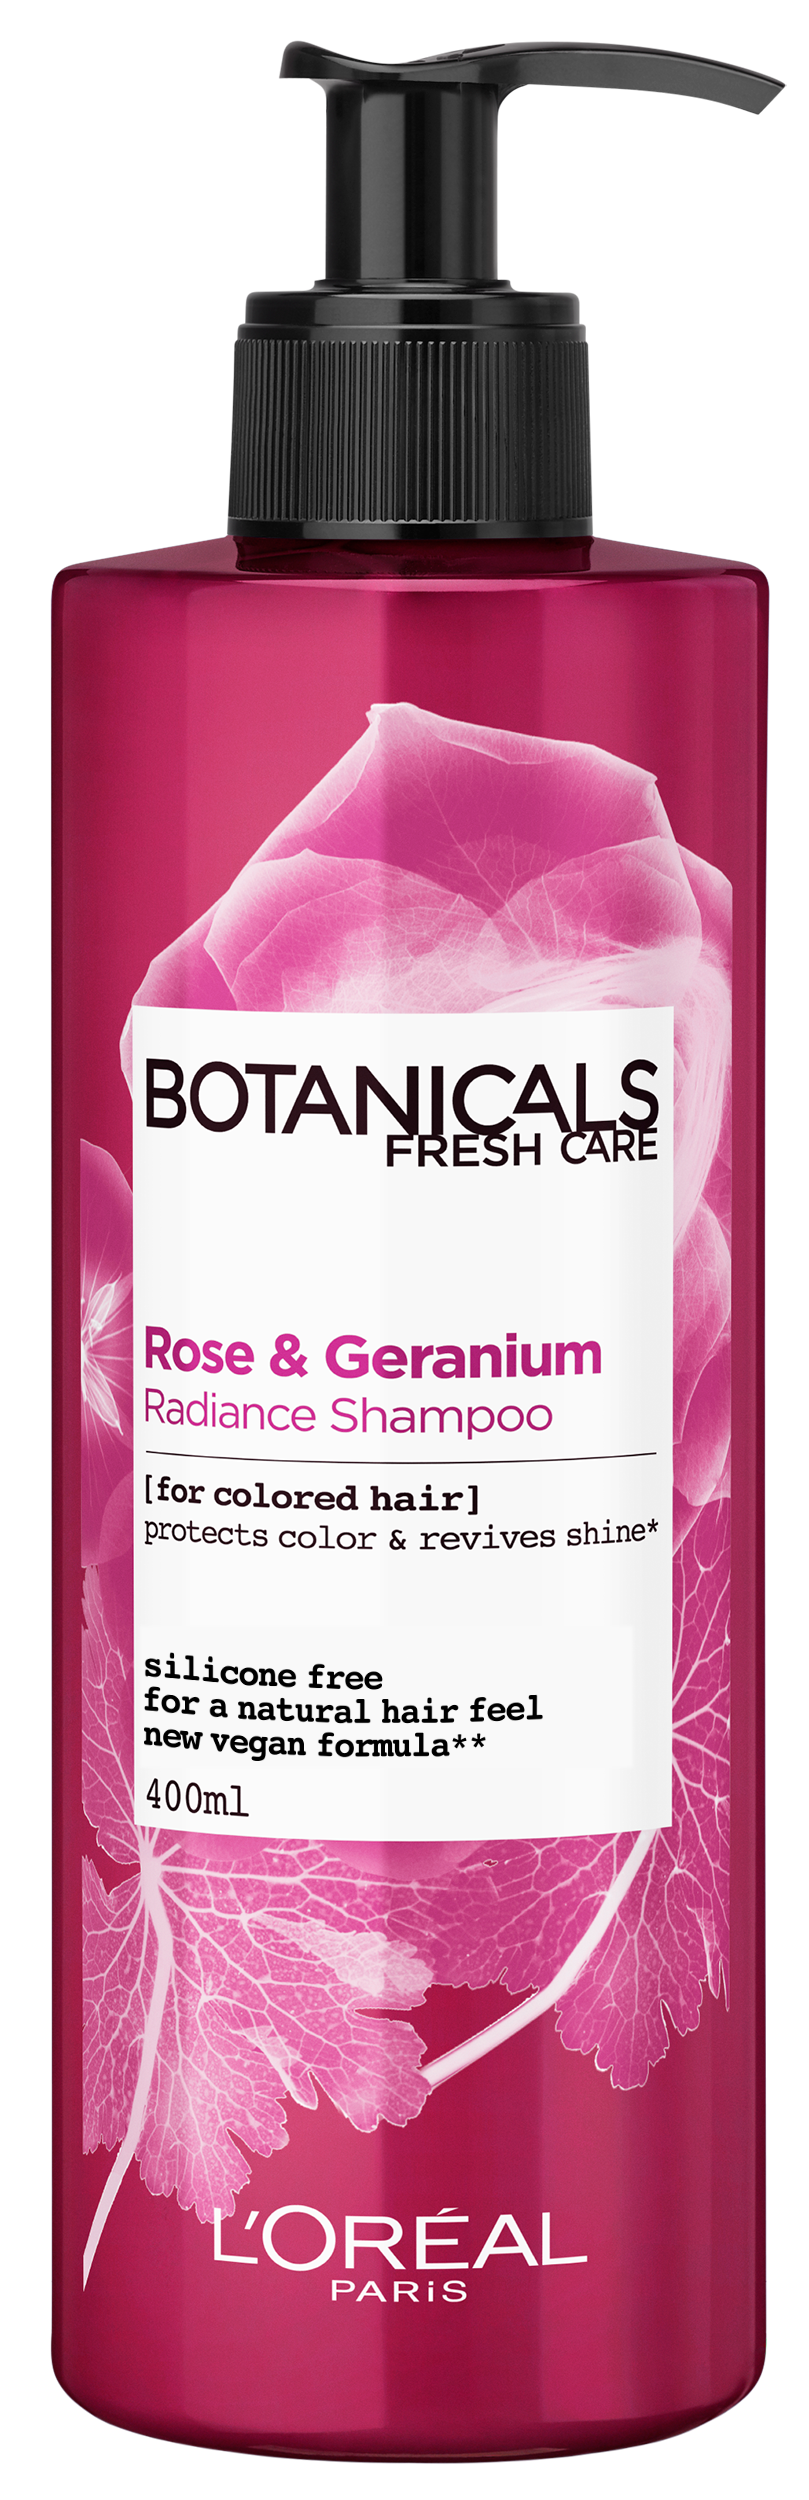 szampon do włosów loreal botanicals fresh care